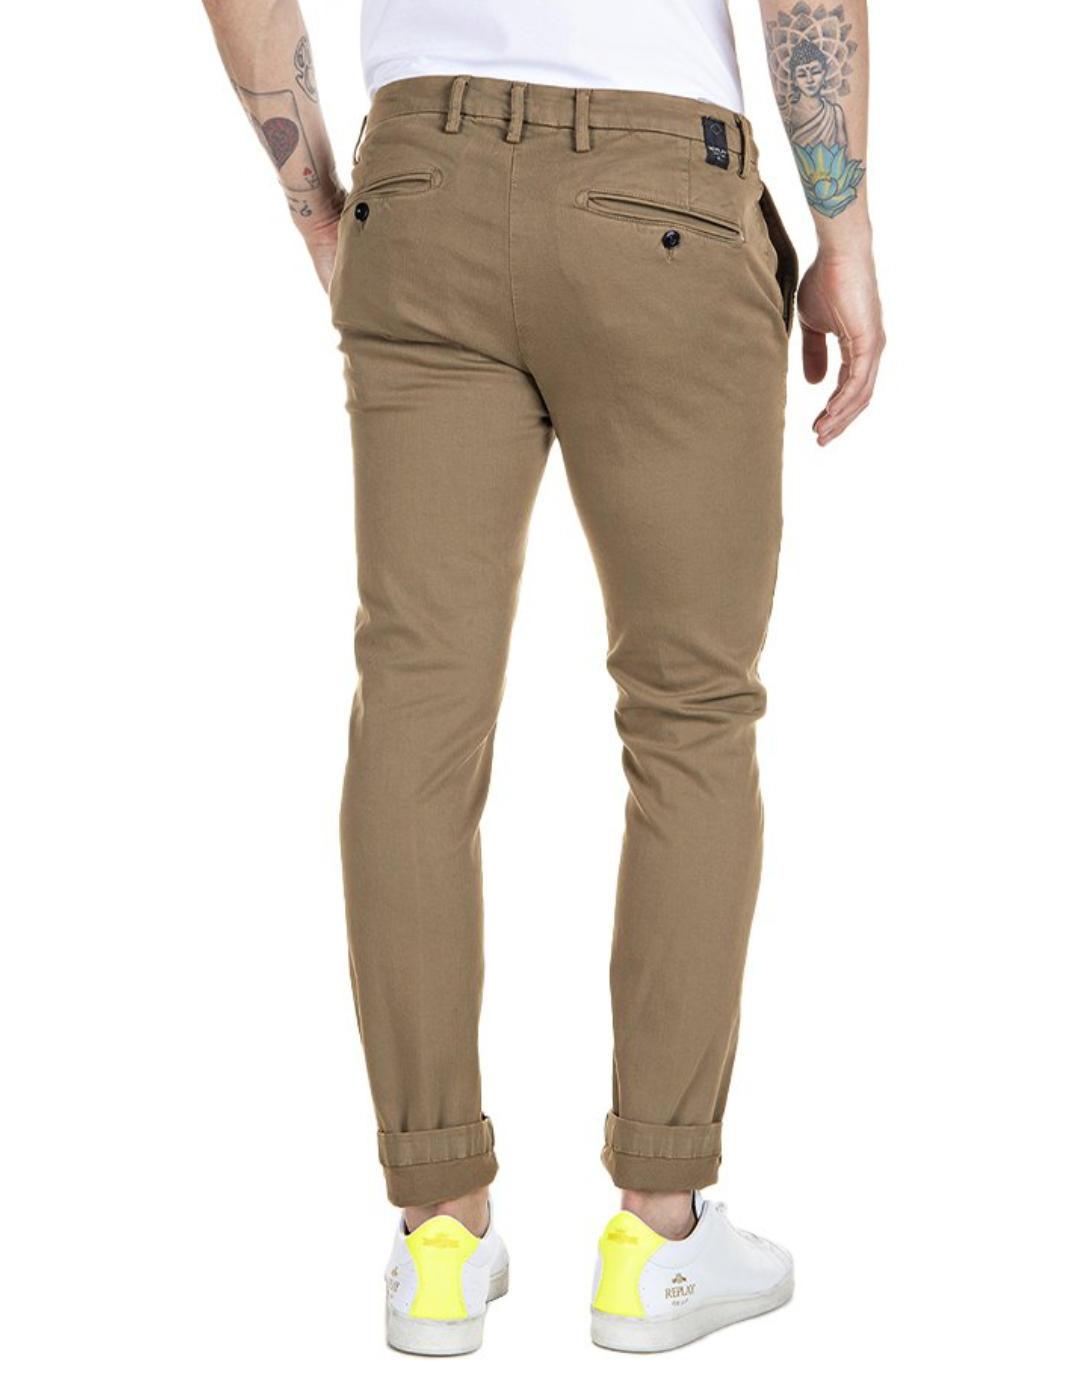 Pantalón tipo chino Replay Hyperflex marrón para hombre